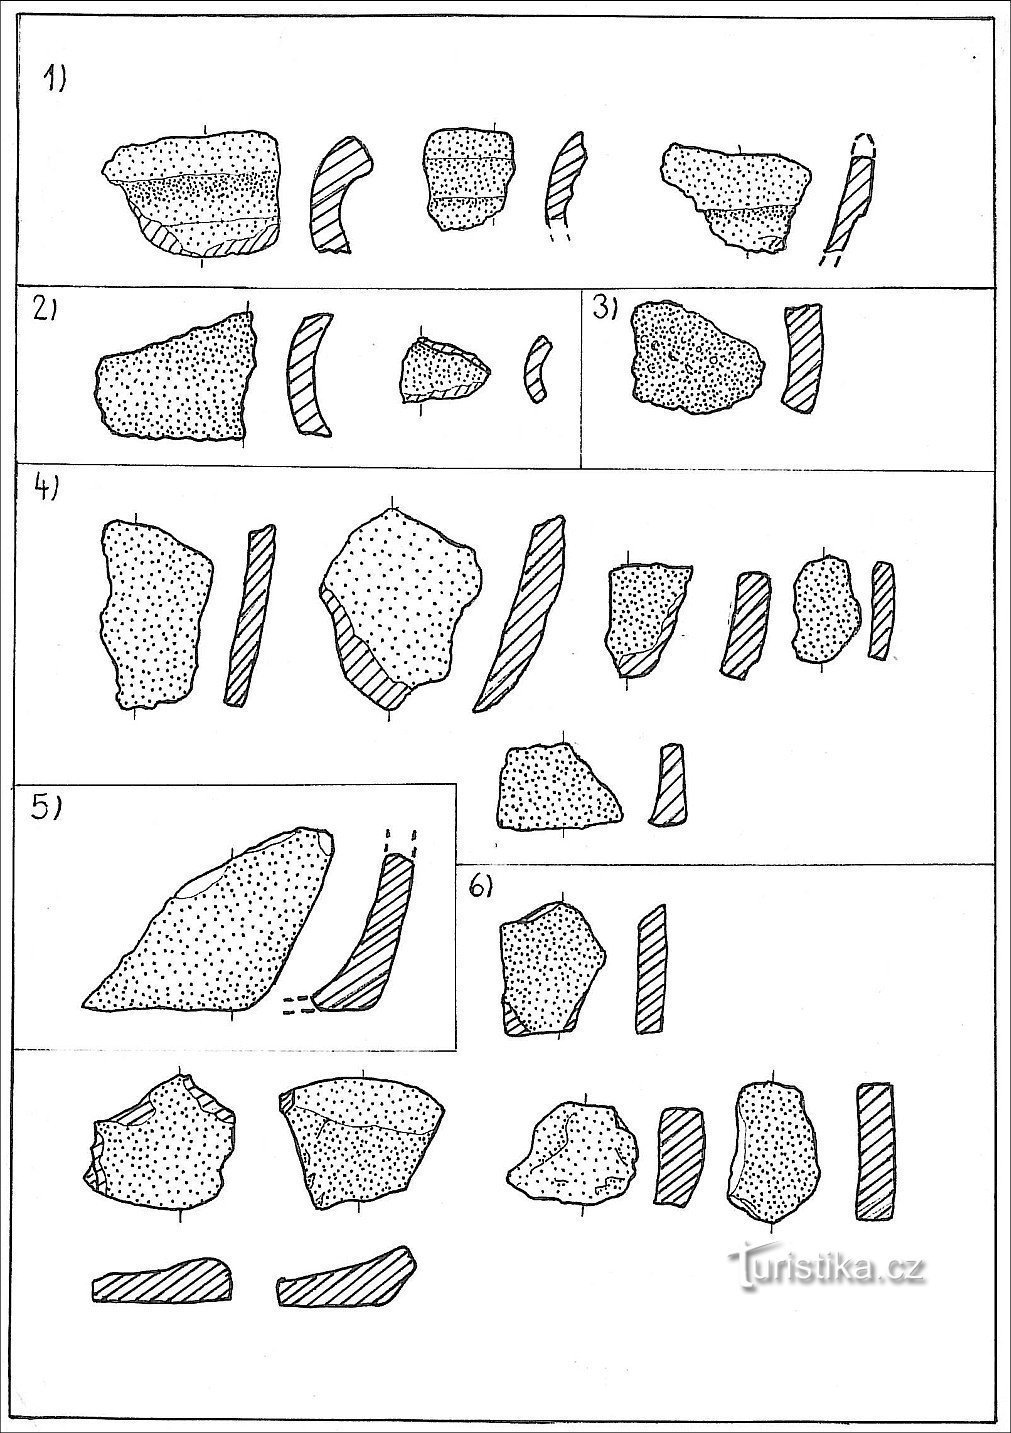 des exemples de céramiques de collines ; 1) bords, 2) gorges, 3) épaules, 4) corps, 5) base, 6) bas